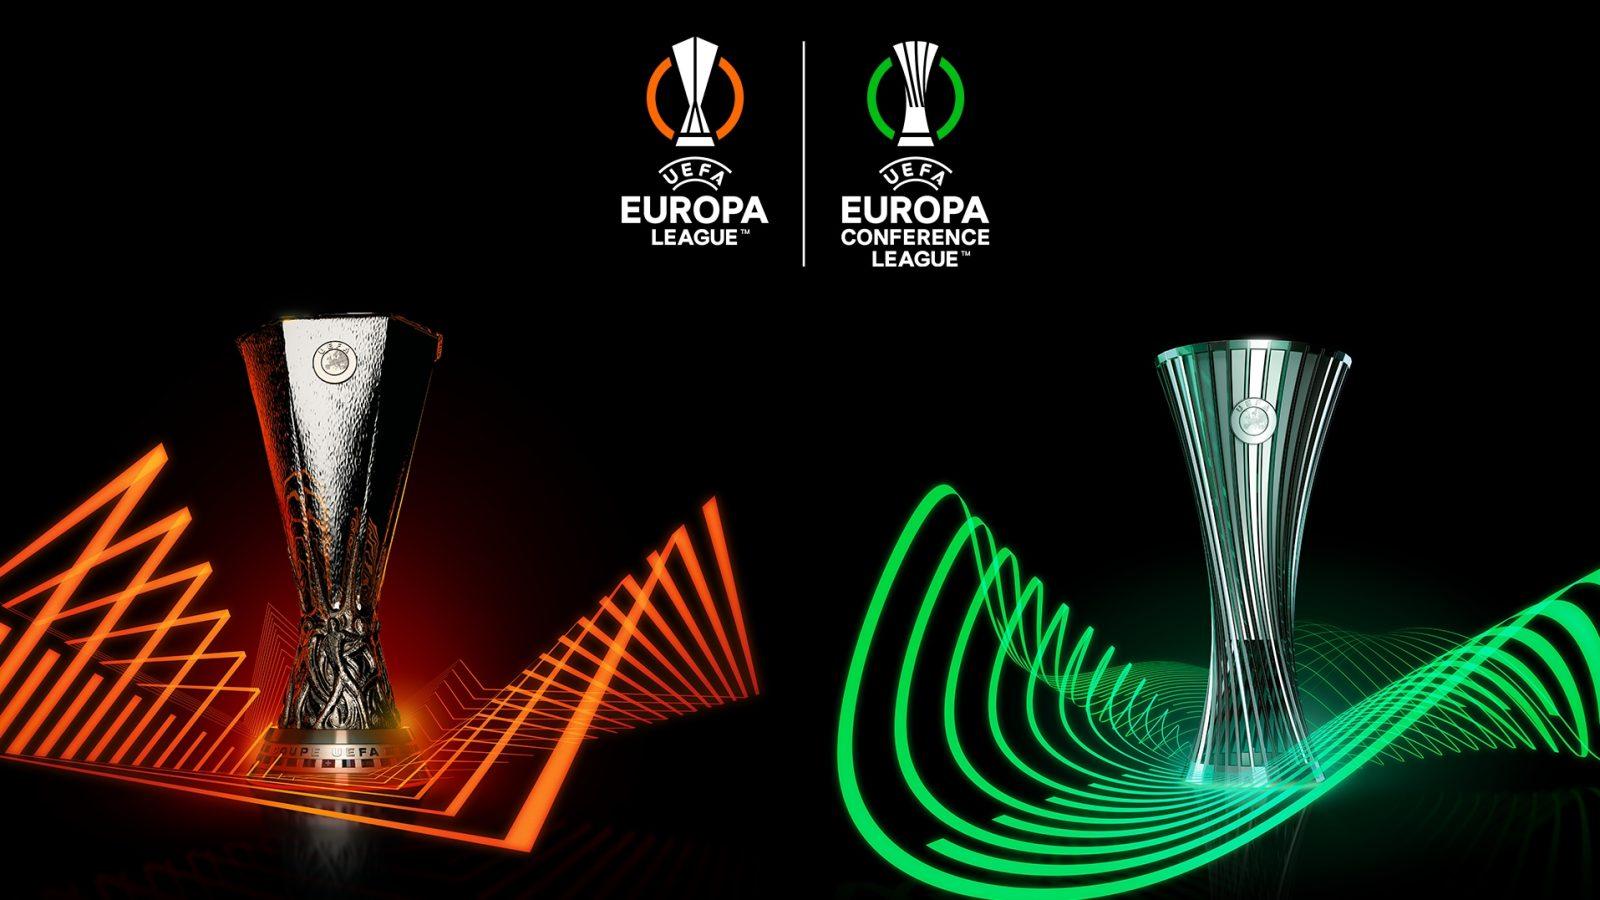 Προγνωστικά europa league + europa conference league.